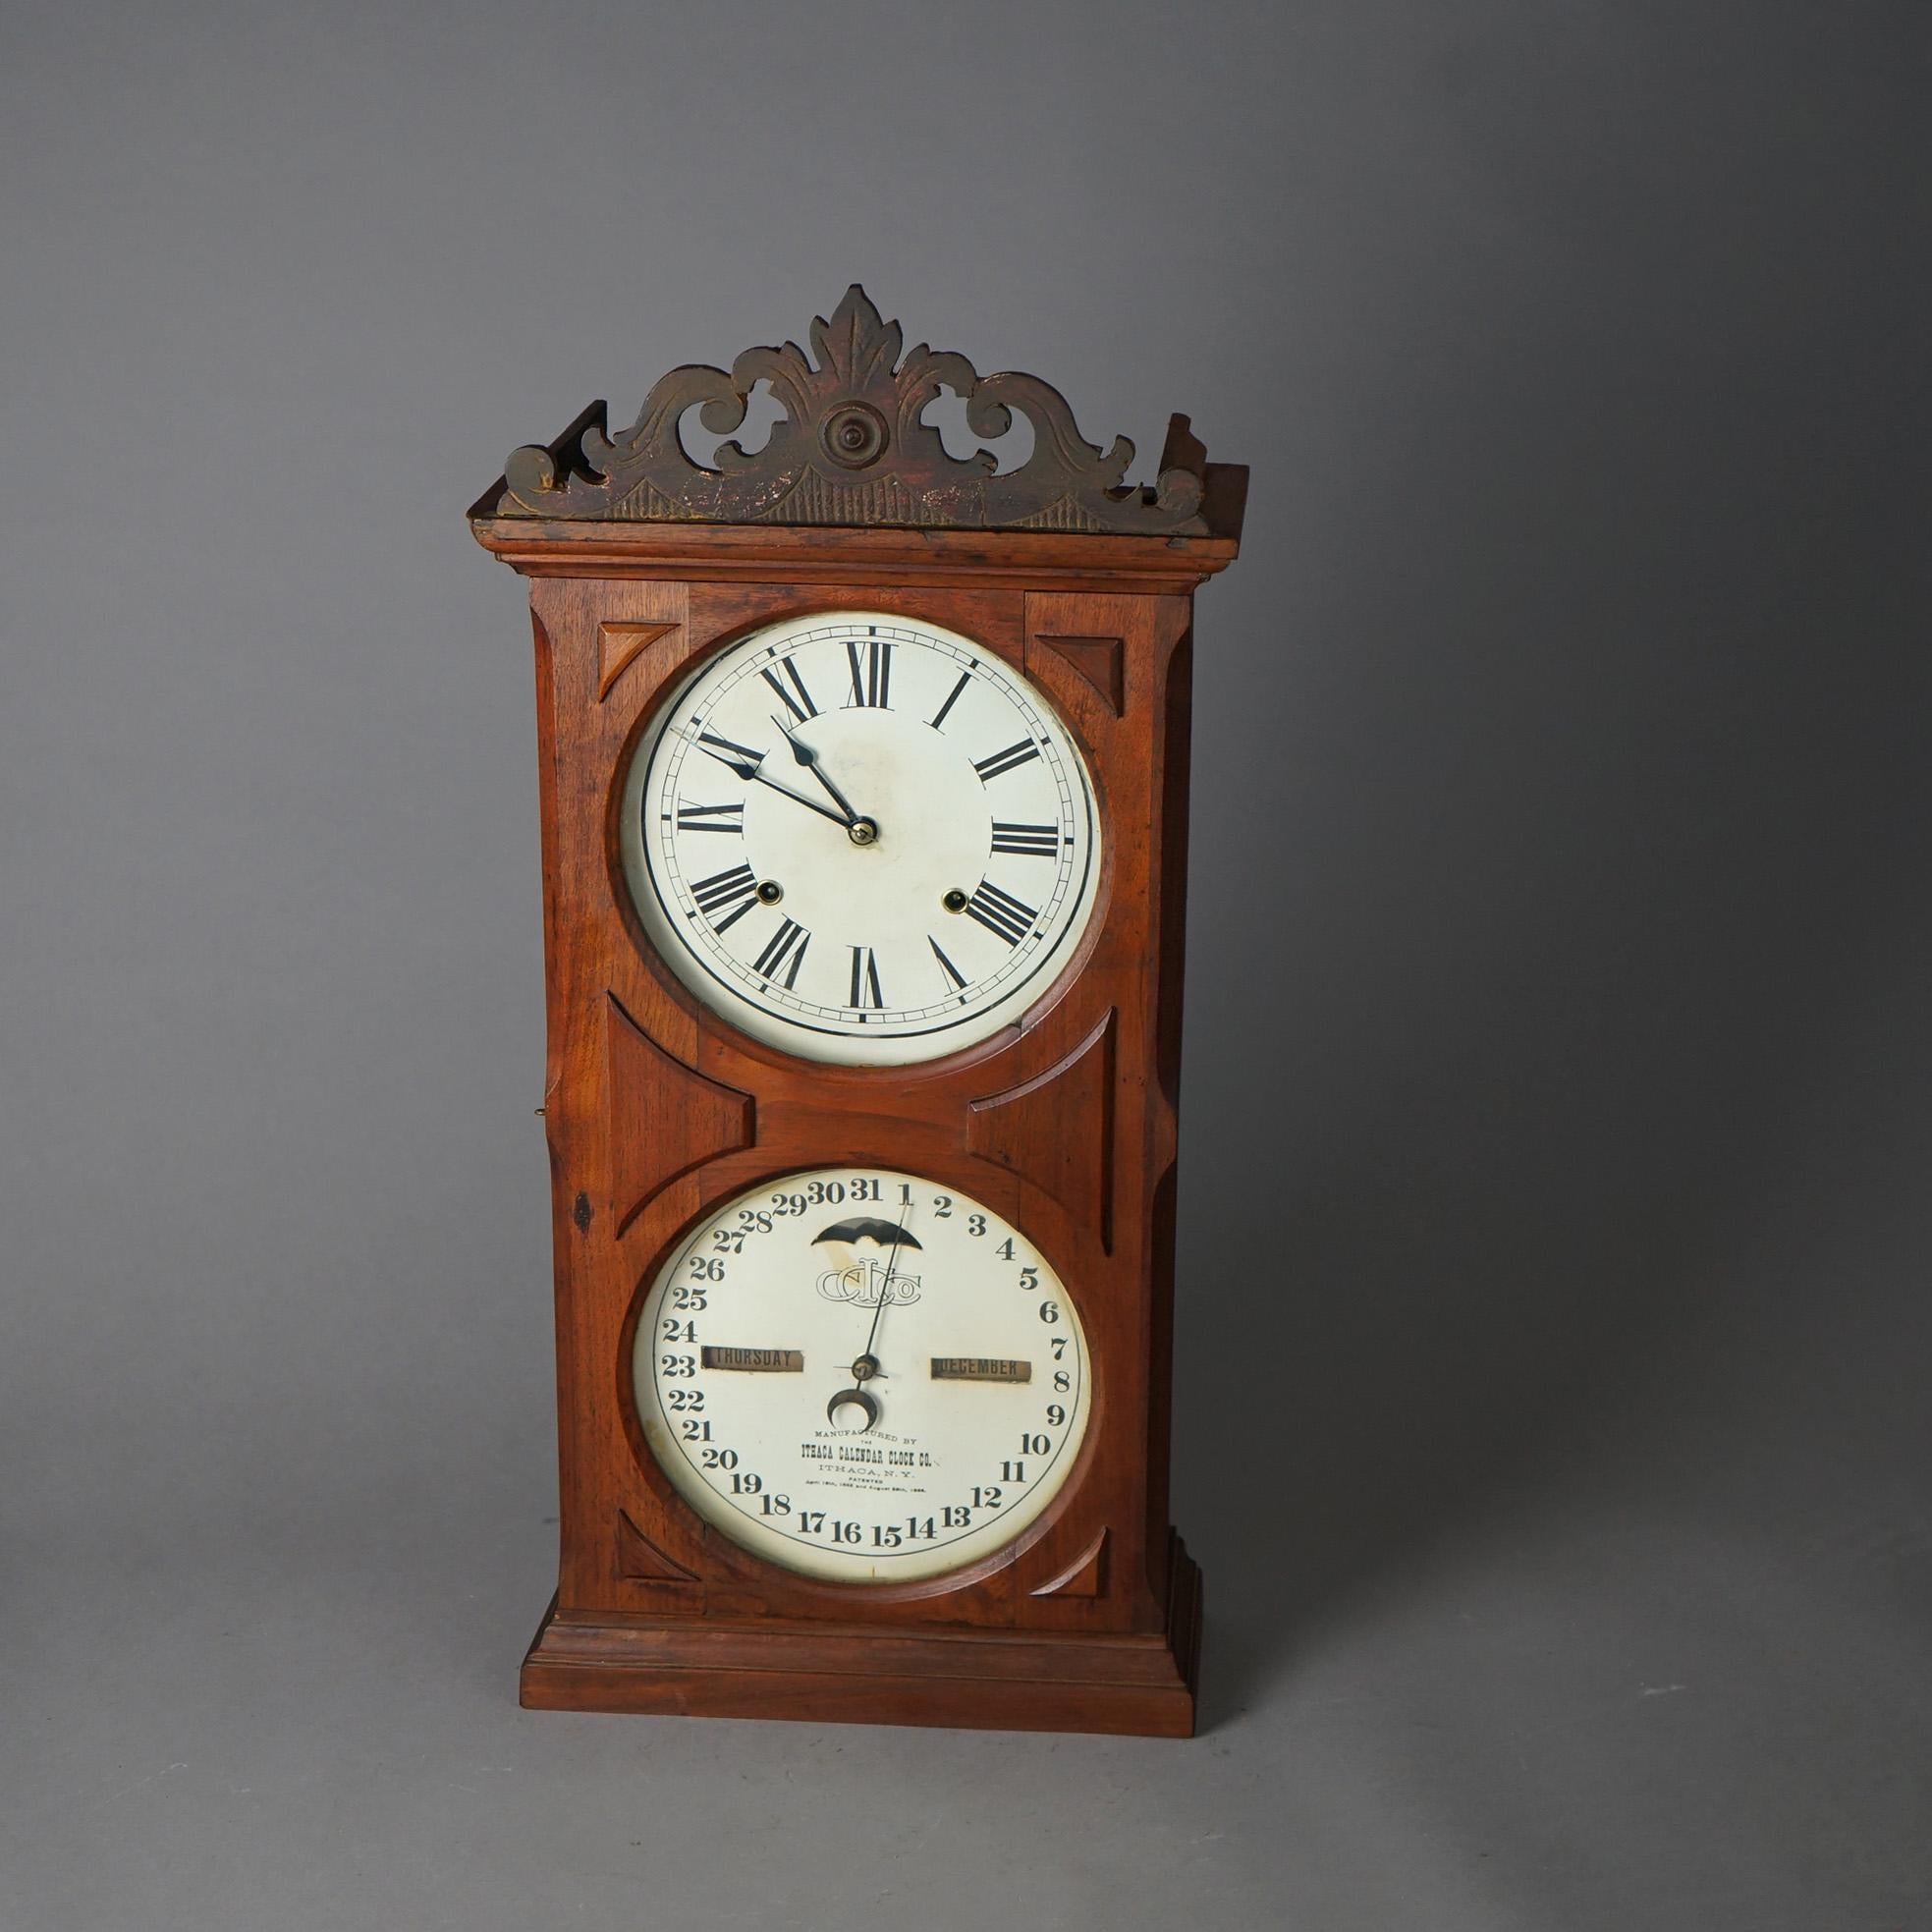 ithaca calendar clock models